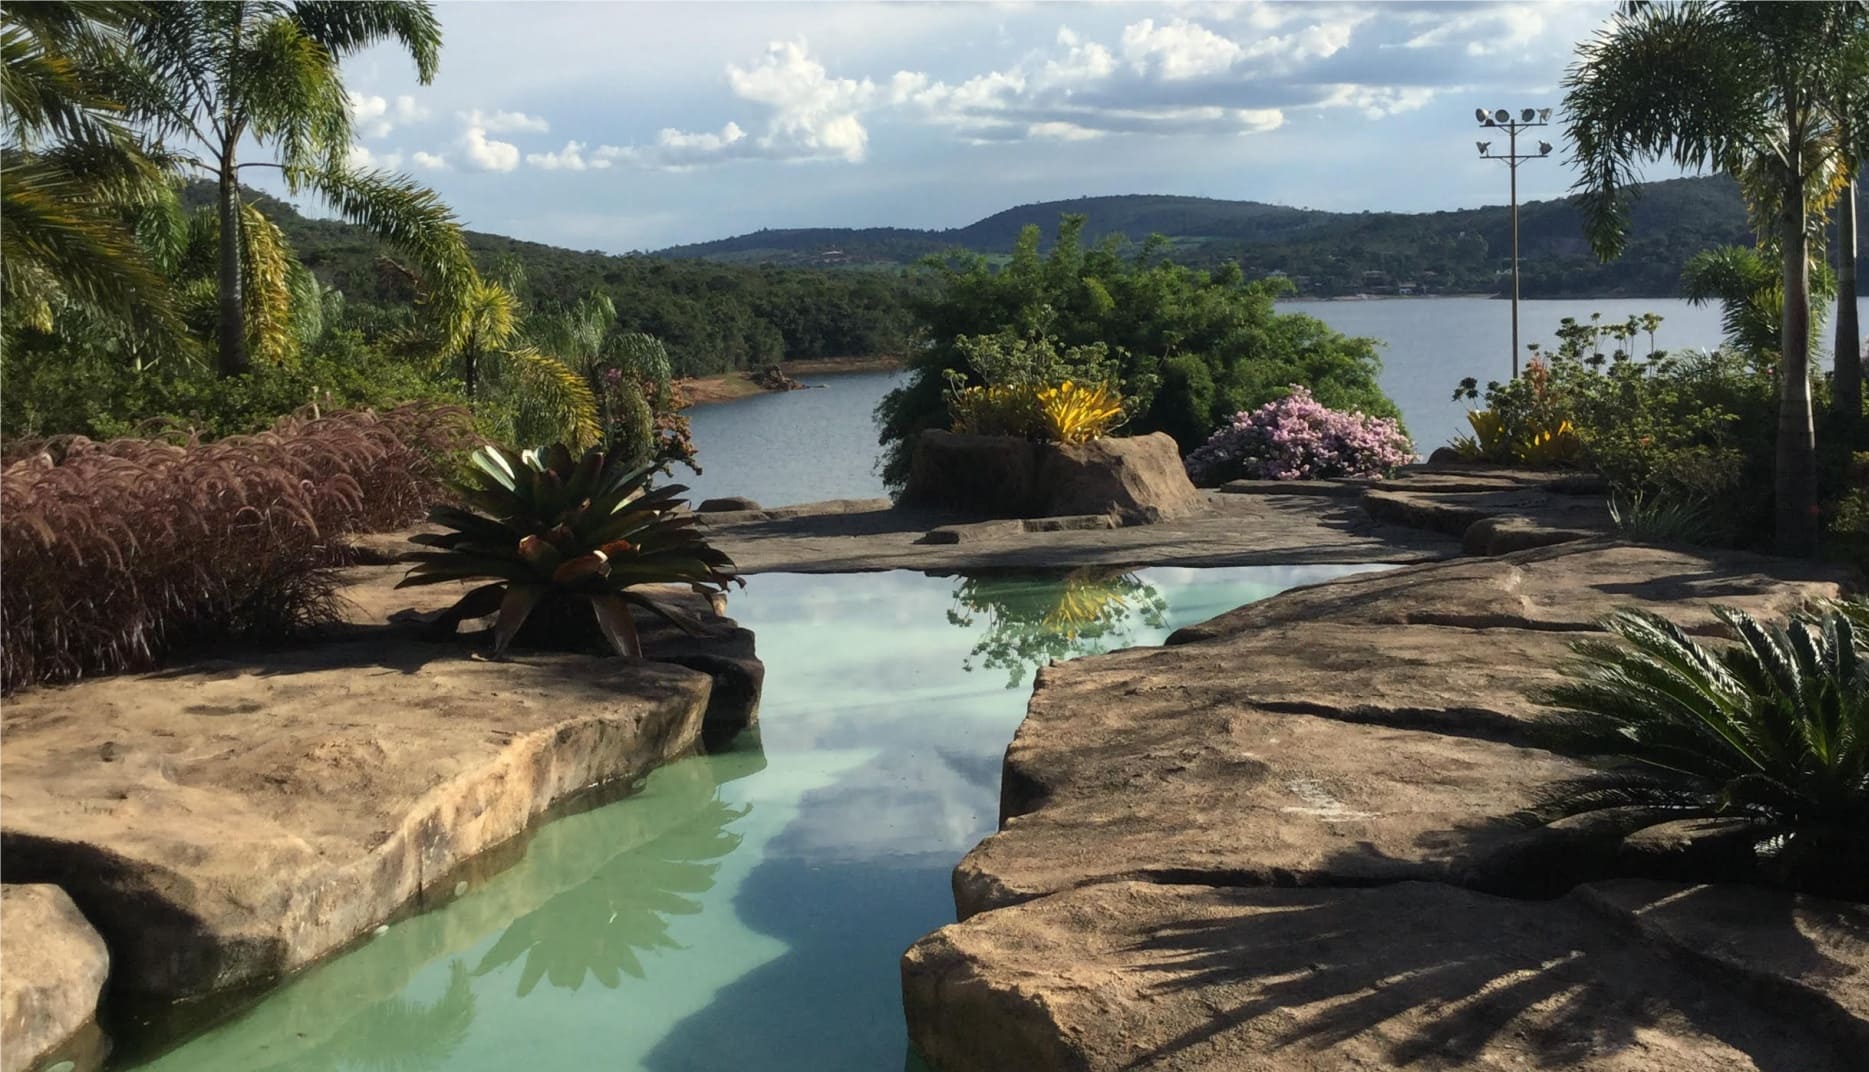 Sítio Lagoa ◽ Itauna